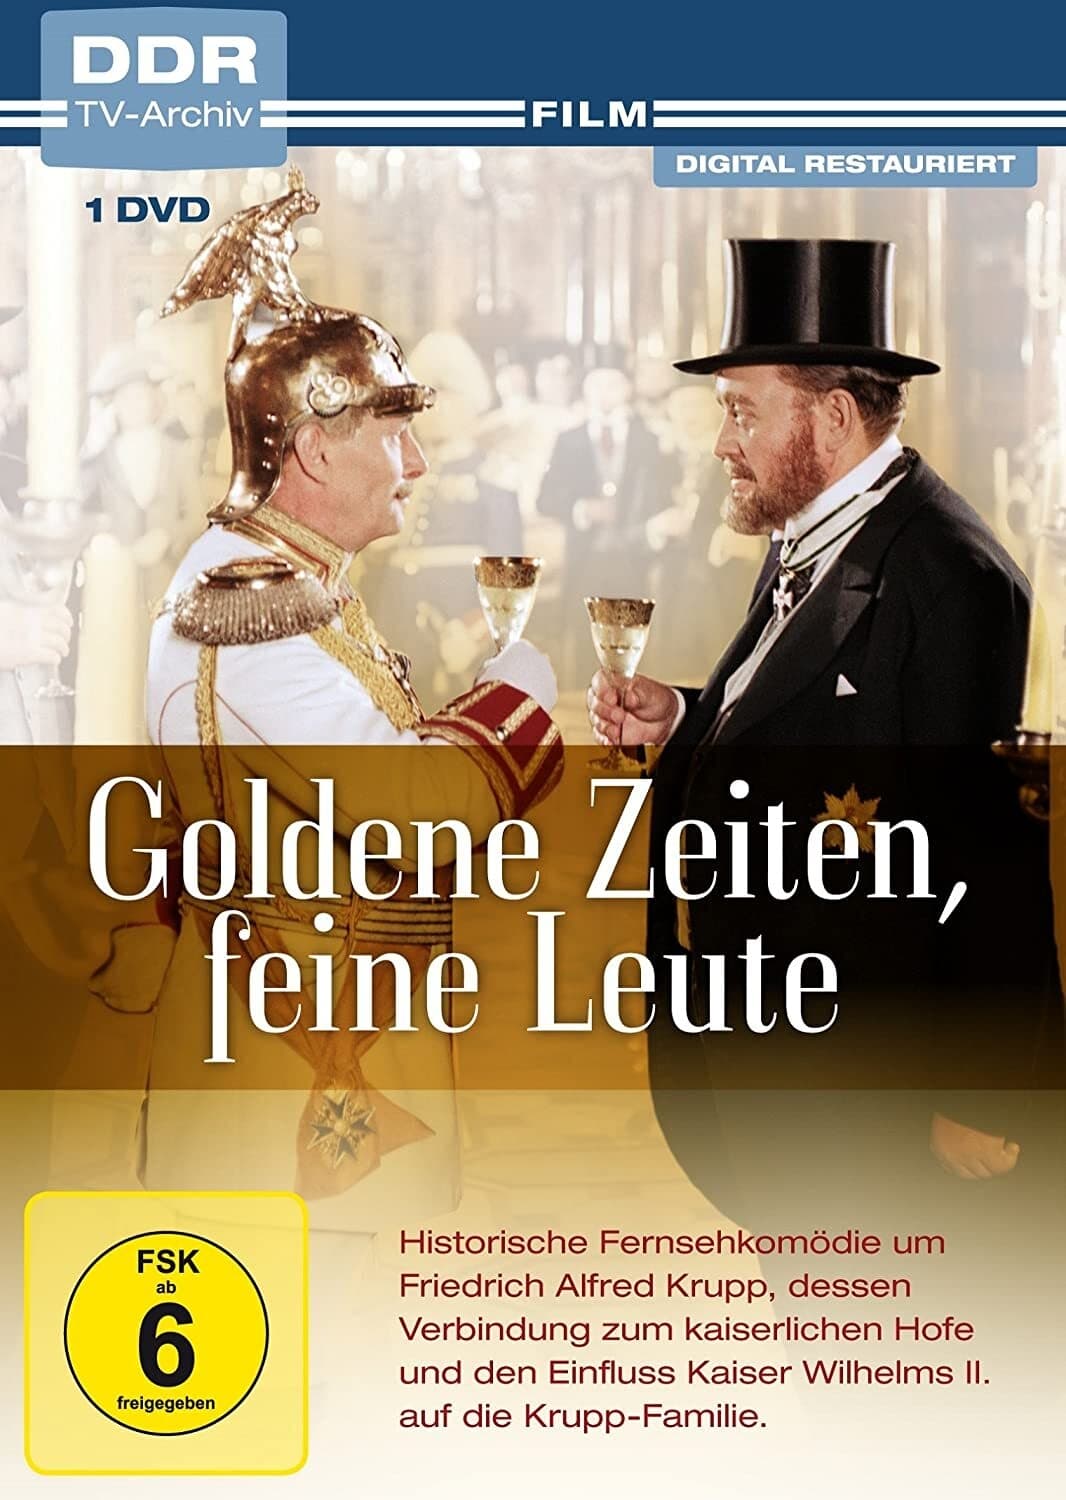 Goldene Zeiten - Feine Leute (1977)